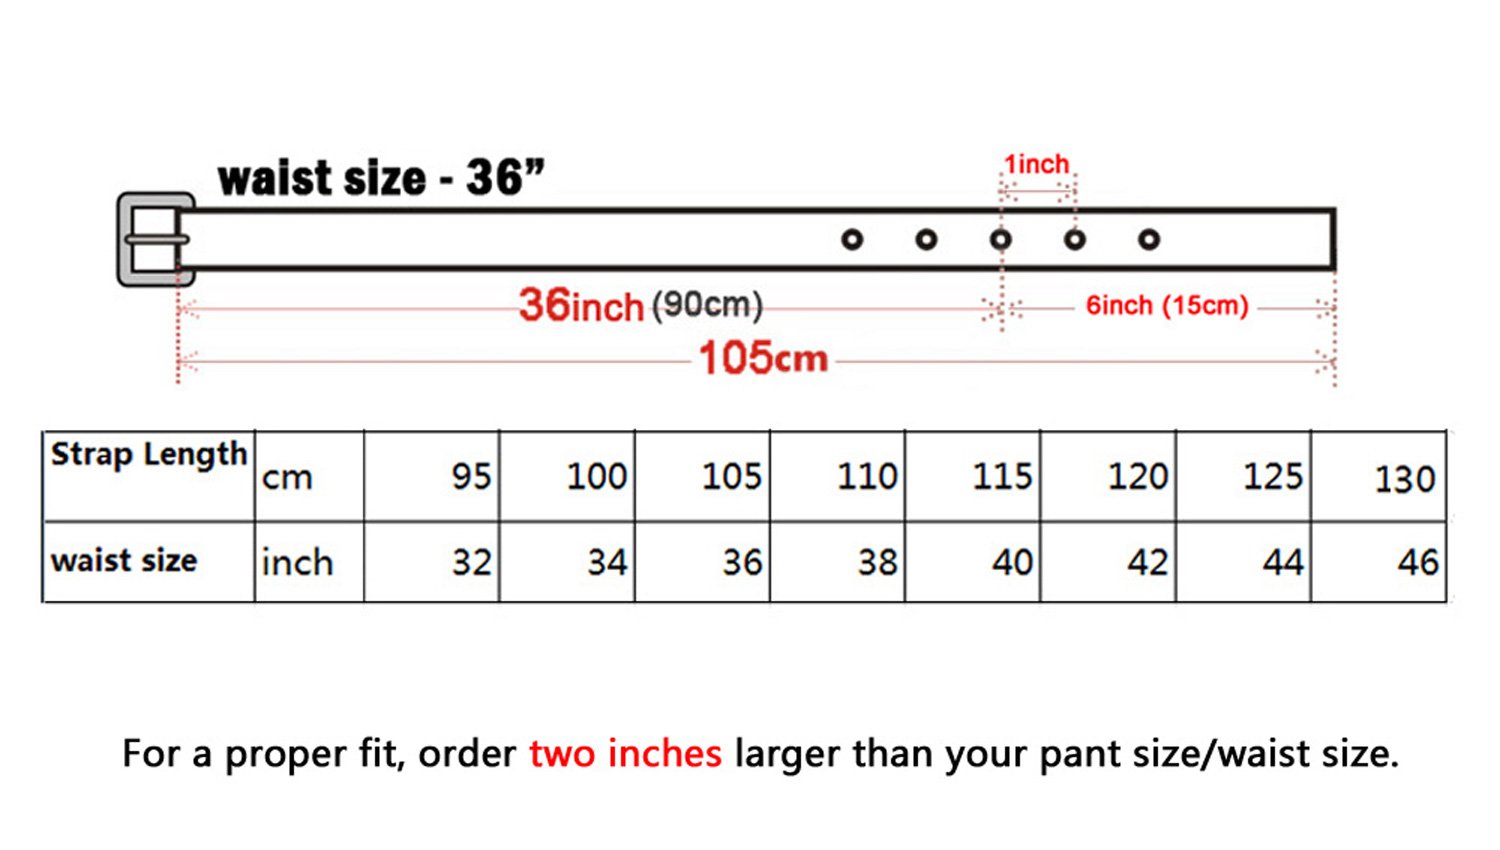 Ремень размеры мужские таблица. Как определить размер ремня. 110 См ремень размер. Размер ремня 105 см. Размер ремня 36 105.